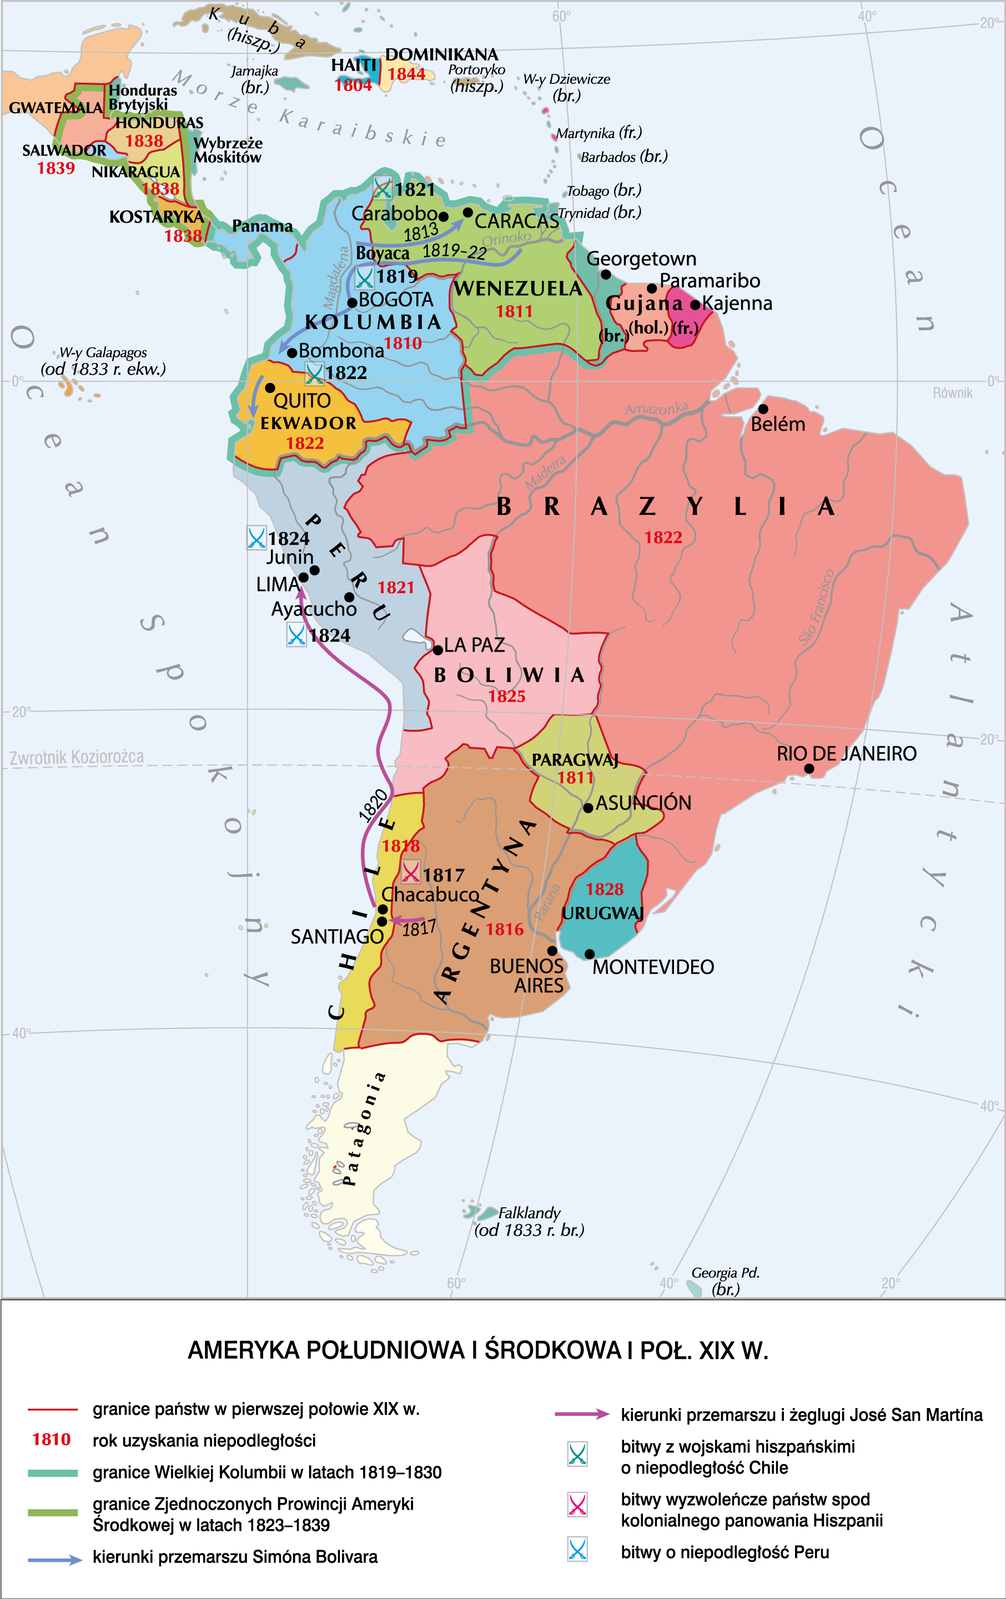 Mapa Ameryki Południowej i Środkowej w I połowie XIX wieku. Po lewej jest Ocean Spokojny, a po prawej Ocean Atlantycki. Mapa przedstawia granice państw wraz z datą uzyskania przez nie niepodległości. Brazylia 1822. Boliwia 1825. Peru 1821. Ekwador 1822. Kolumbia 1810. Wenezuela 1811. Salwador 1839. Nikaragua 1838. Kostaryka 1838. Haiti 1804. Dominikana 1844. Paragwaj 1811. Argentyna 1816. Chile 1818. Urugwaj 1828.  